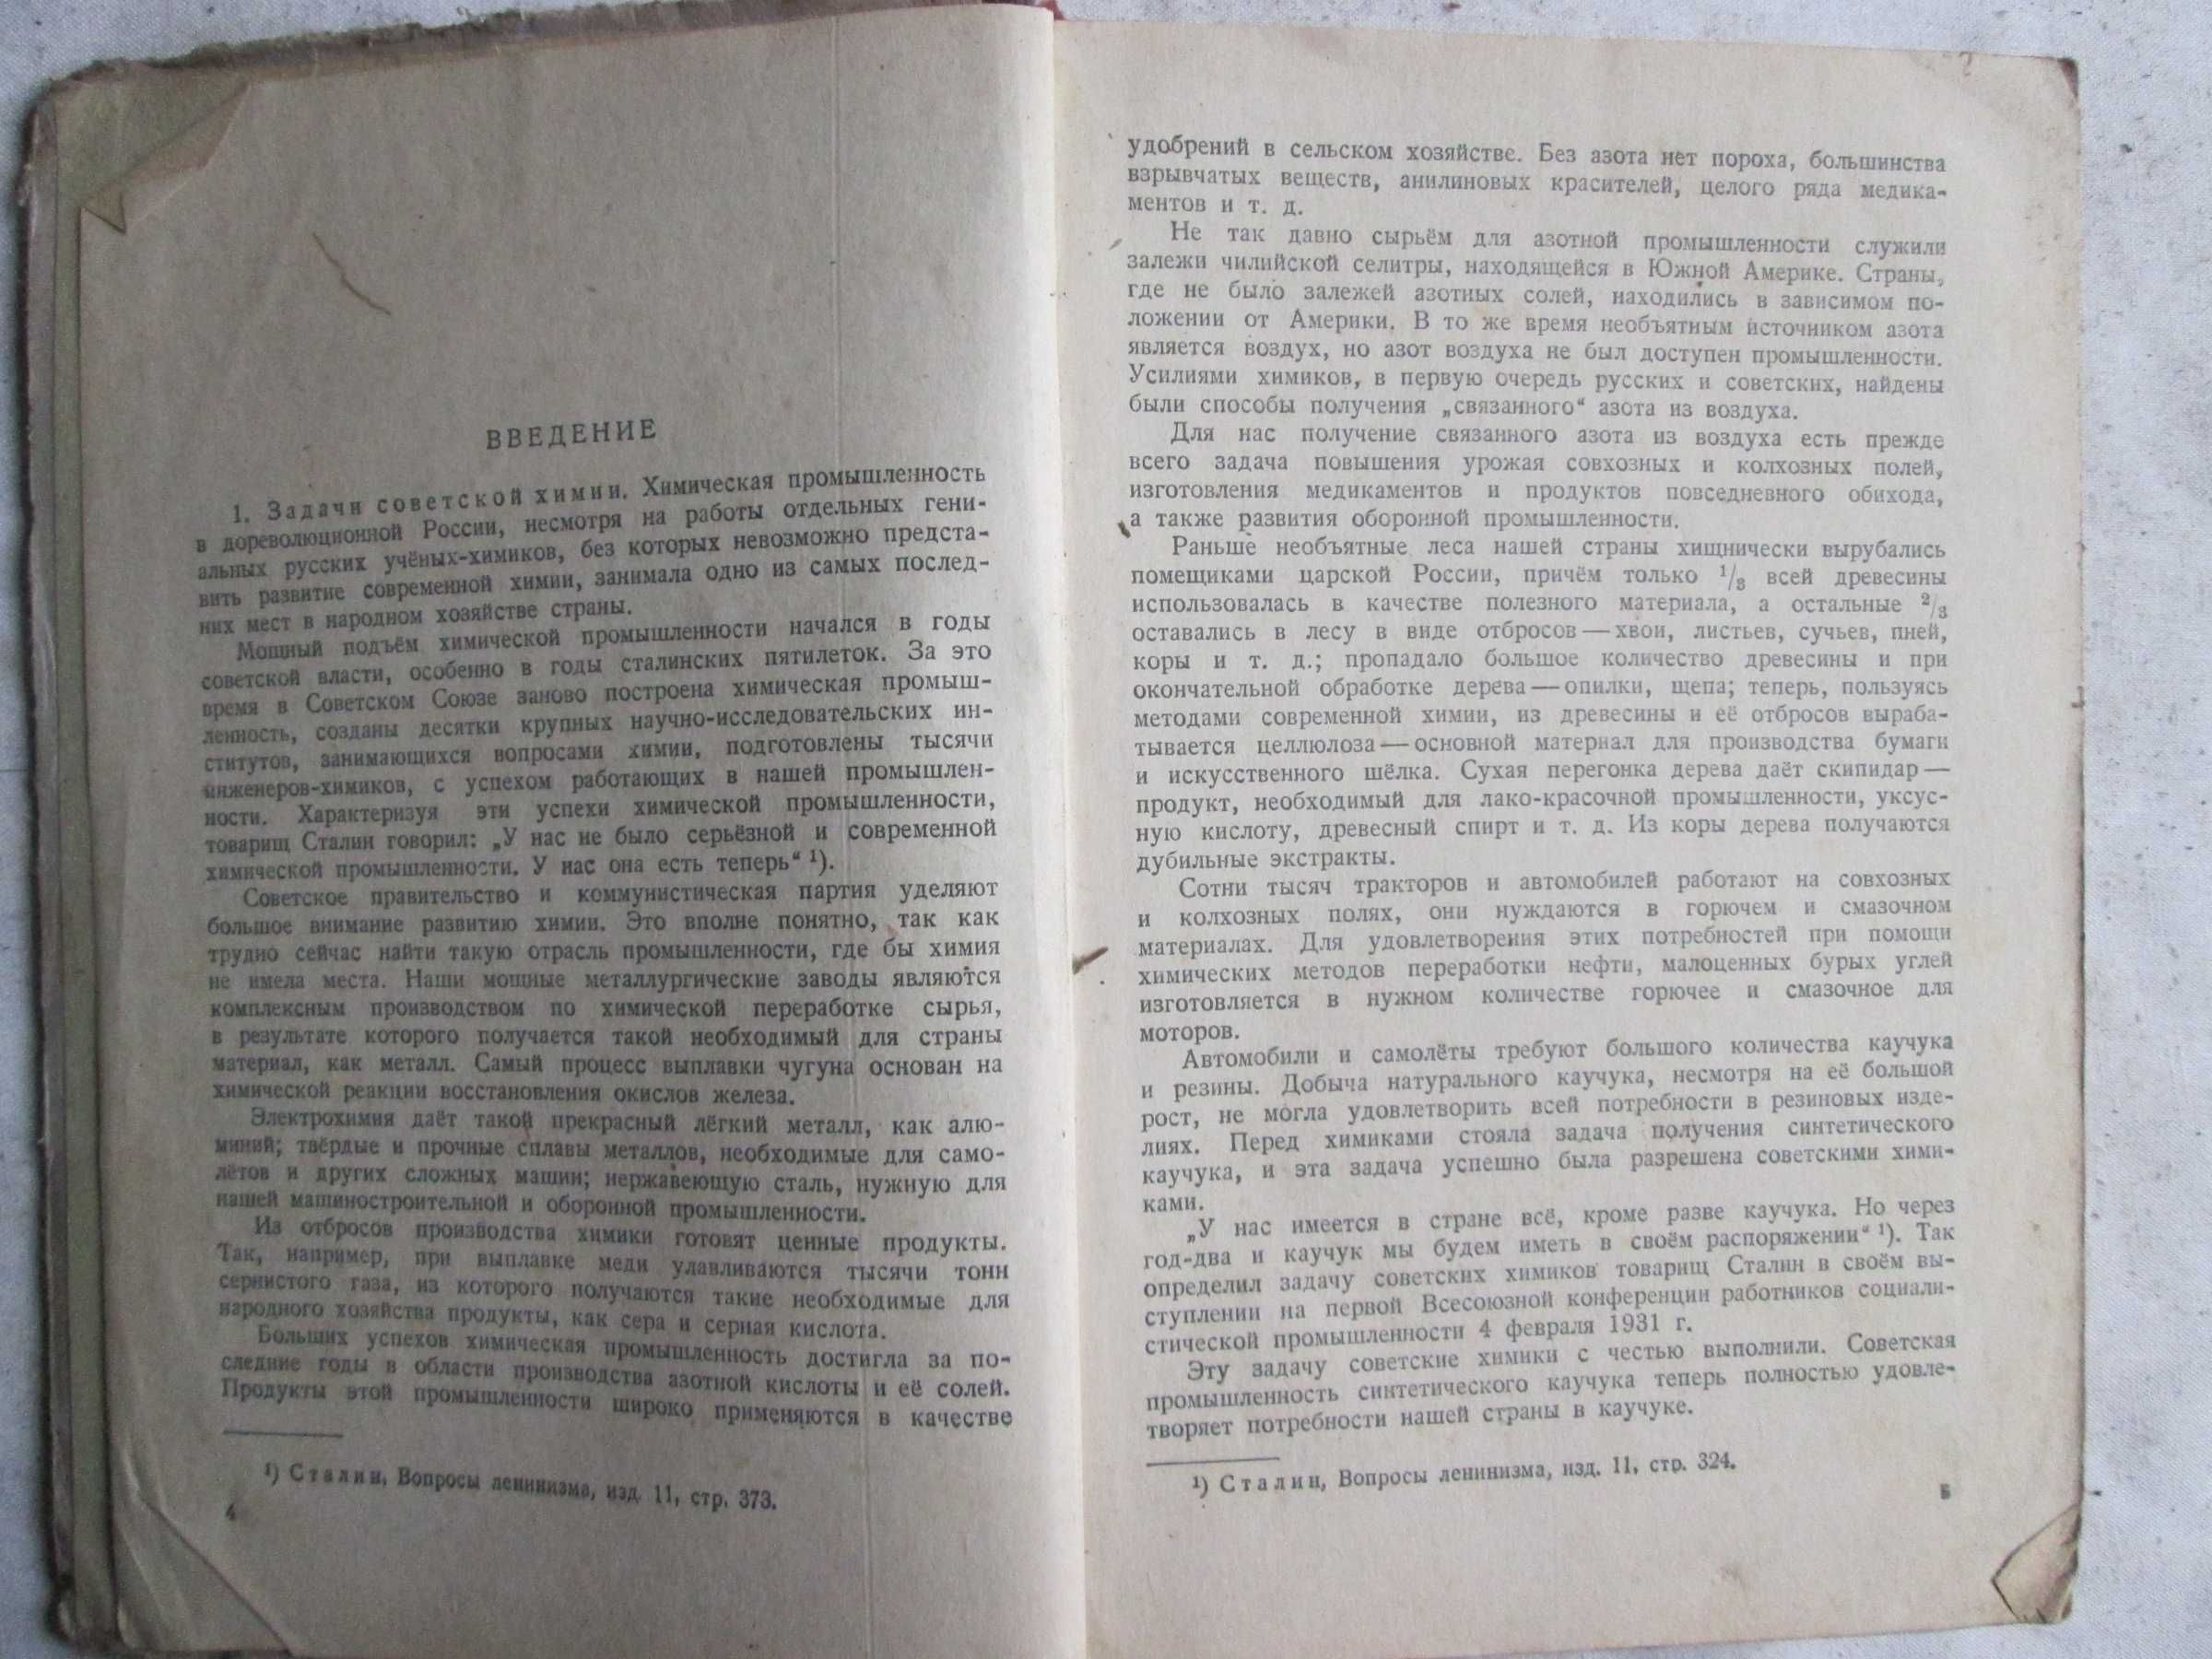 ЛЕВЧЕНКО Р. В. Химия 8 - 10 кл. 1952 год.